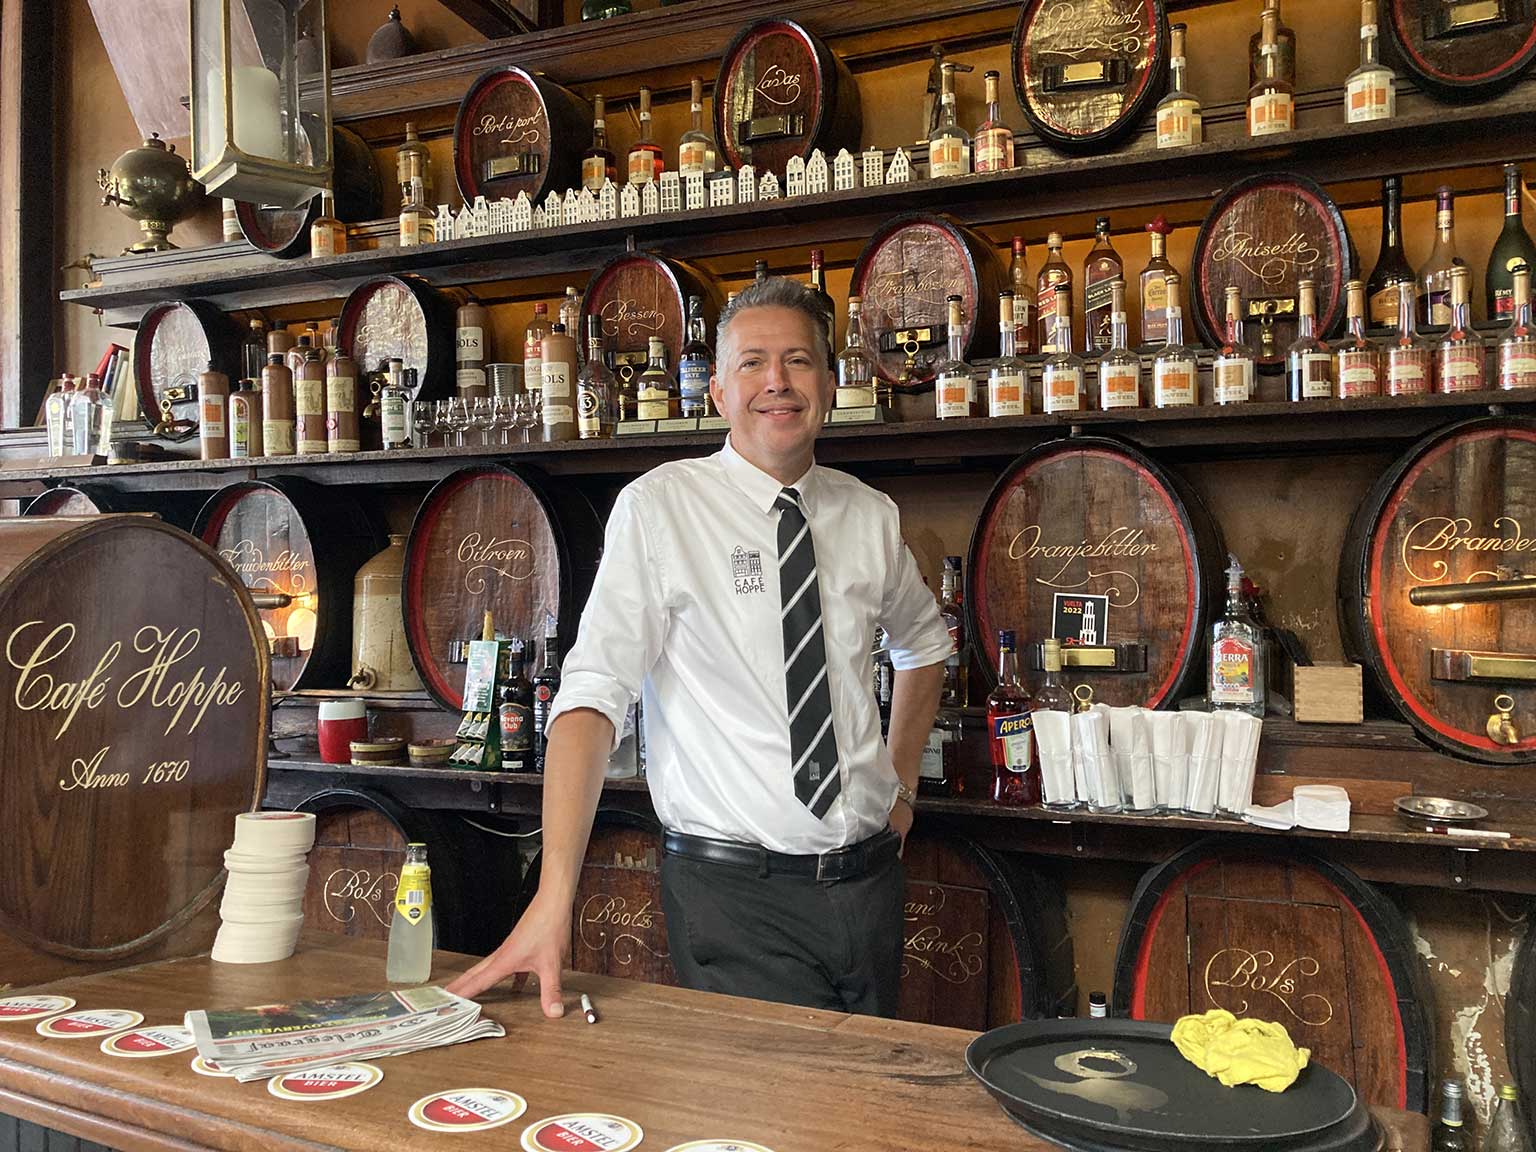 Barman Peter op zijn laatste dag bij Café Hoppe, Amsterdam